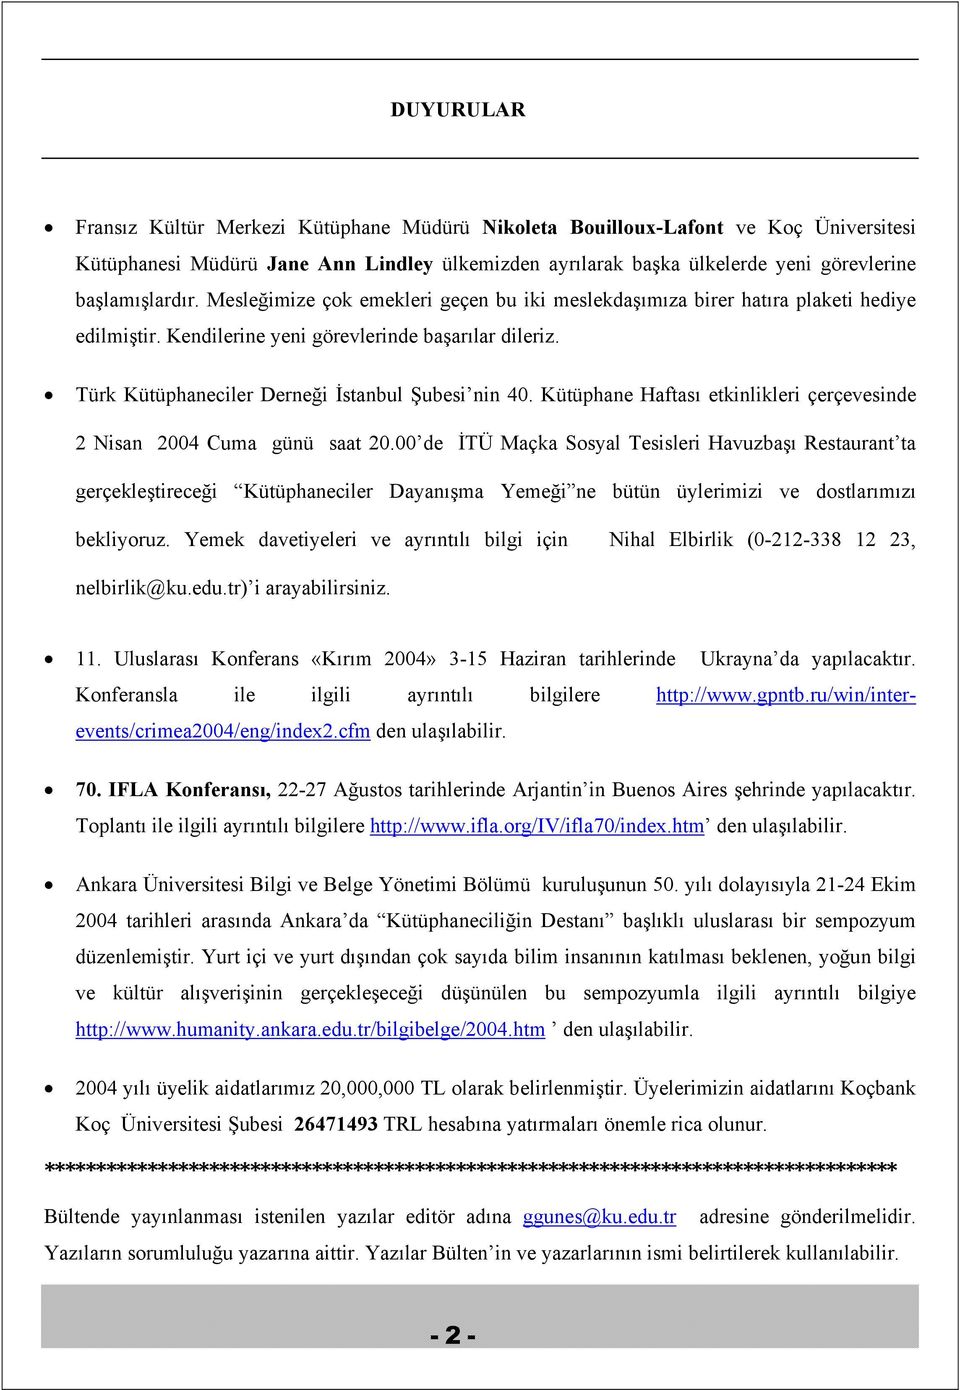 Türk Kütüphaneciler Derneği İstanbul Şubesi nin 40. Kütüphane Haftası etkinlikleri çerçevesinde 2 Nisan 2004 Cuma günü saat 20.